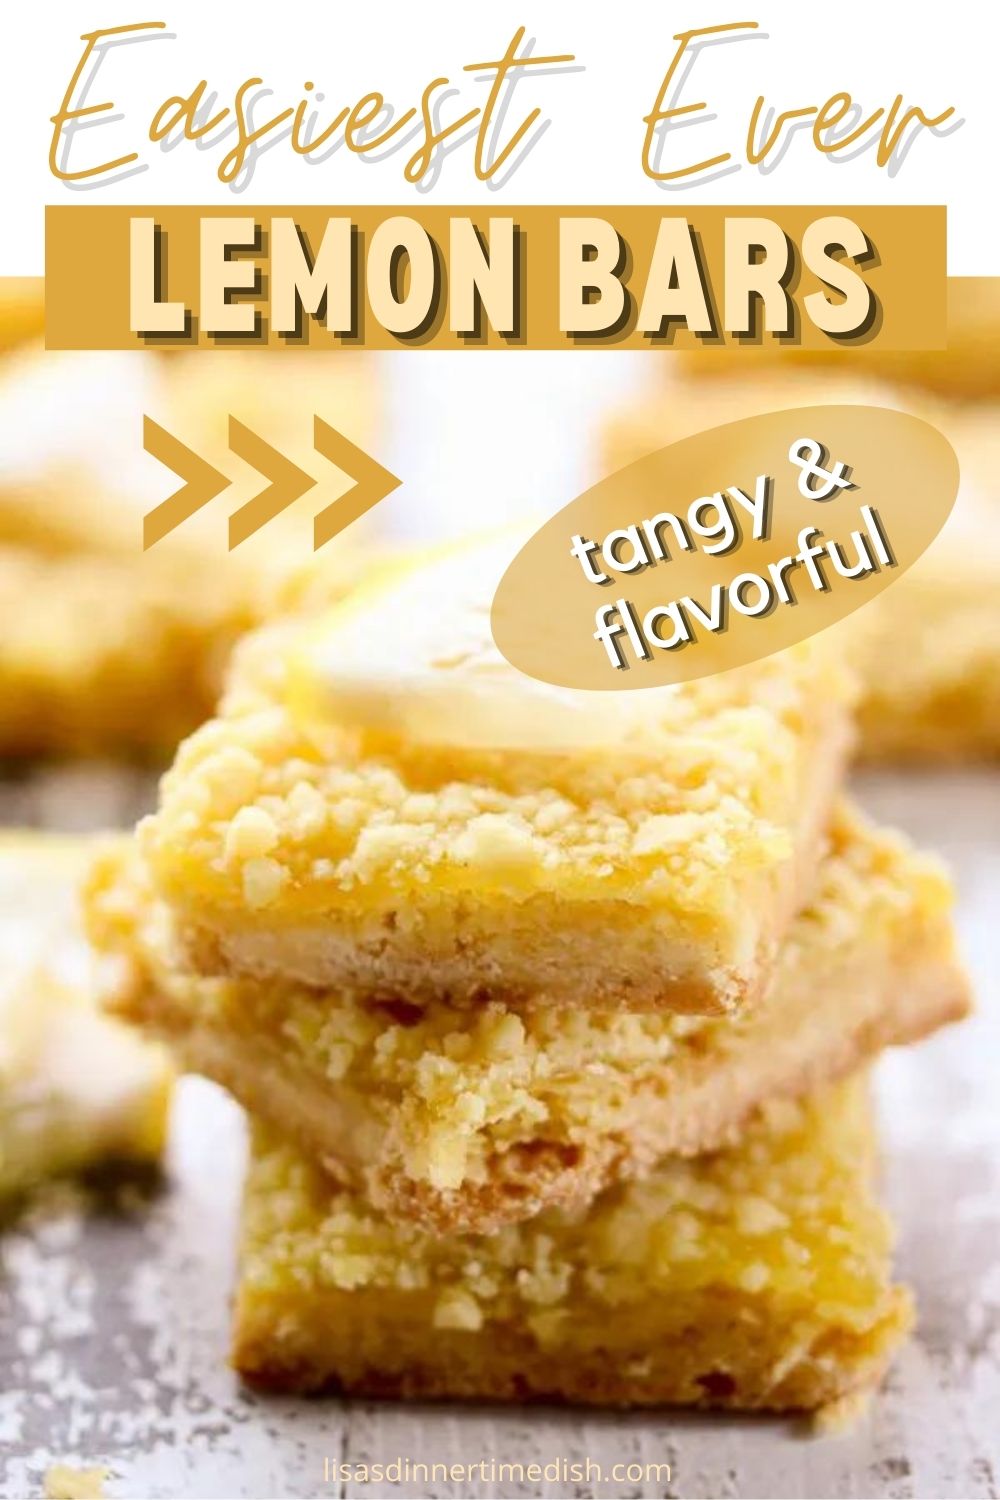  Easy Lemon bars